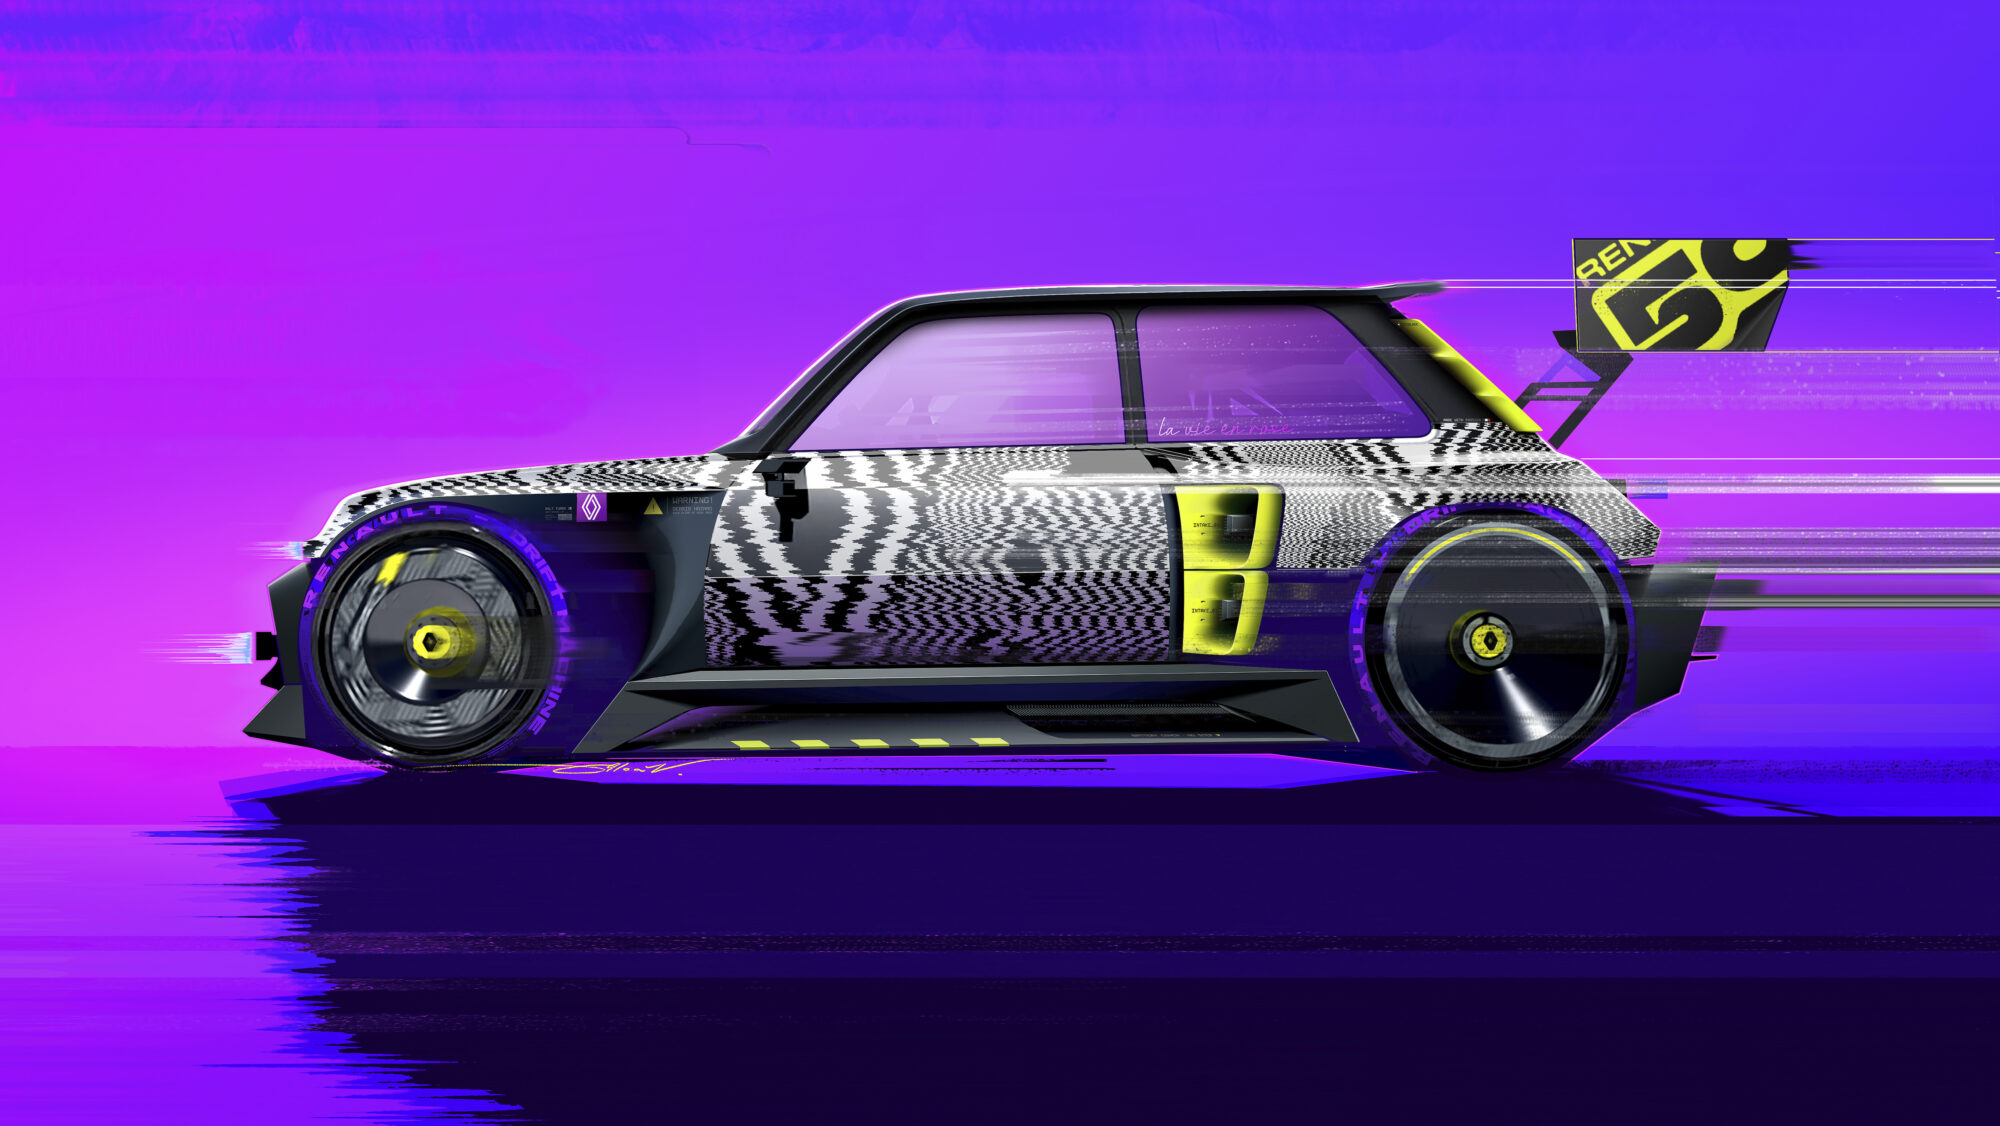 R5 TURBO 3E show-car